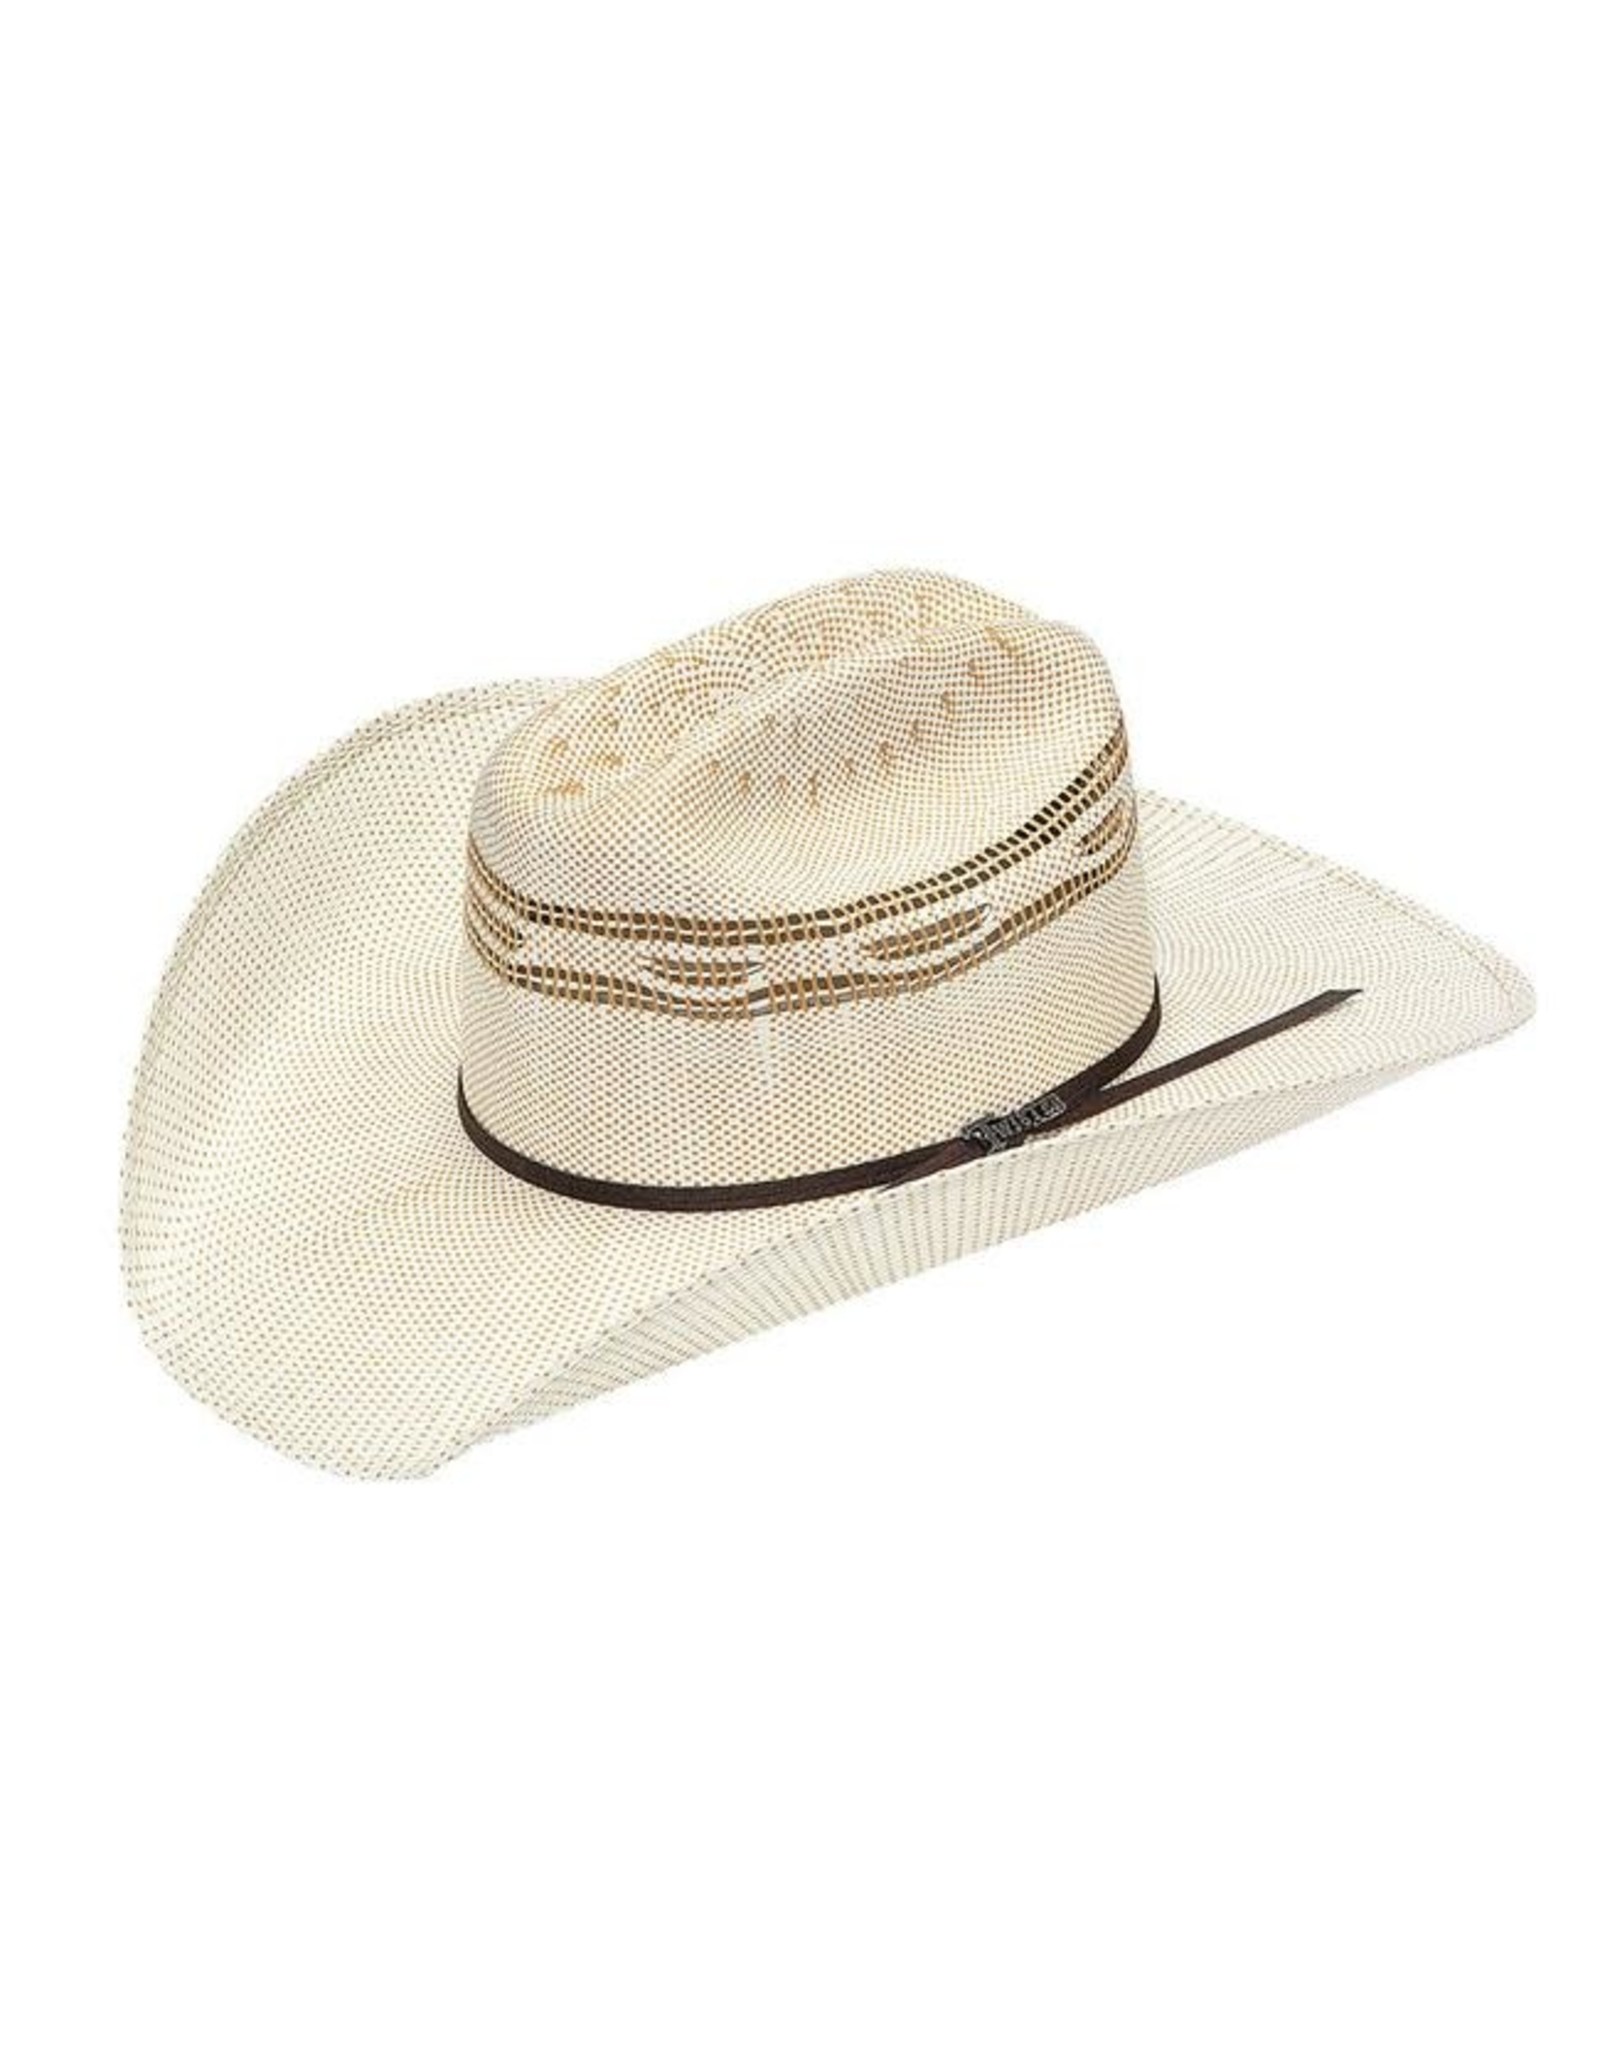 Twister Golden Bangora T71627 Straw Cowboy Hat